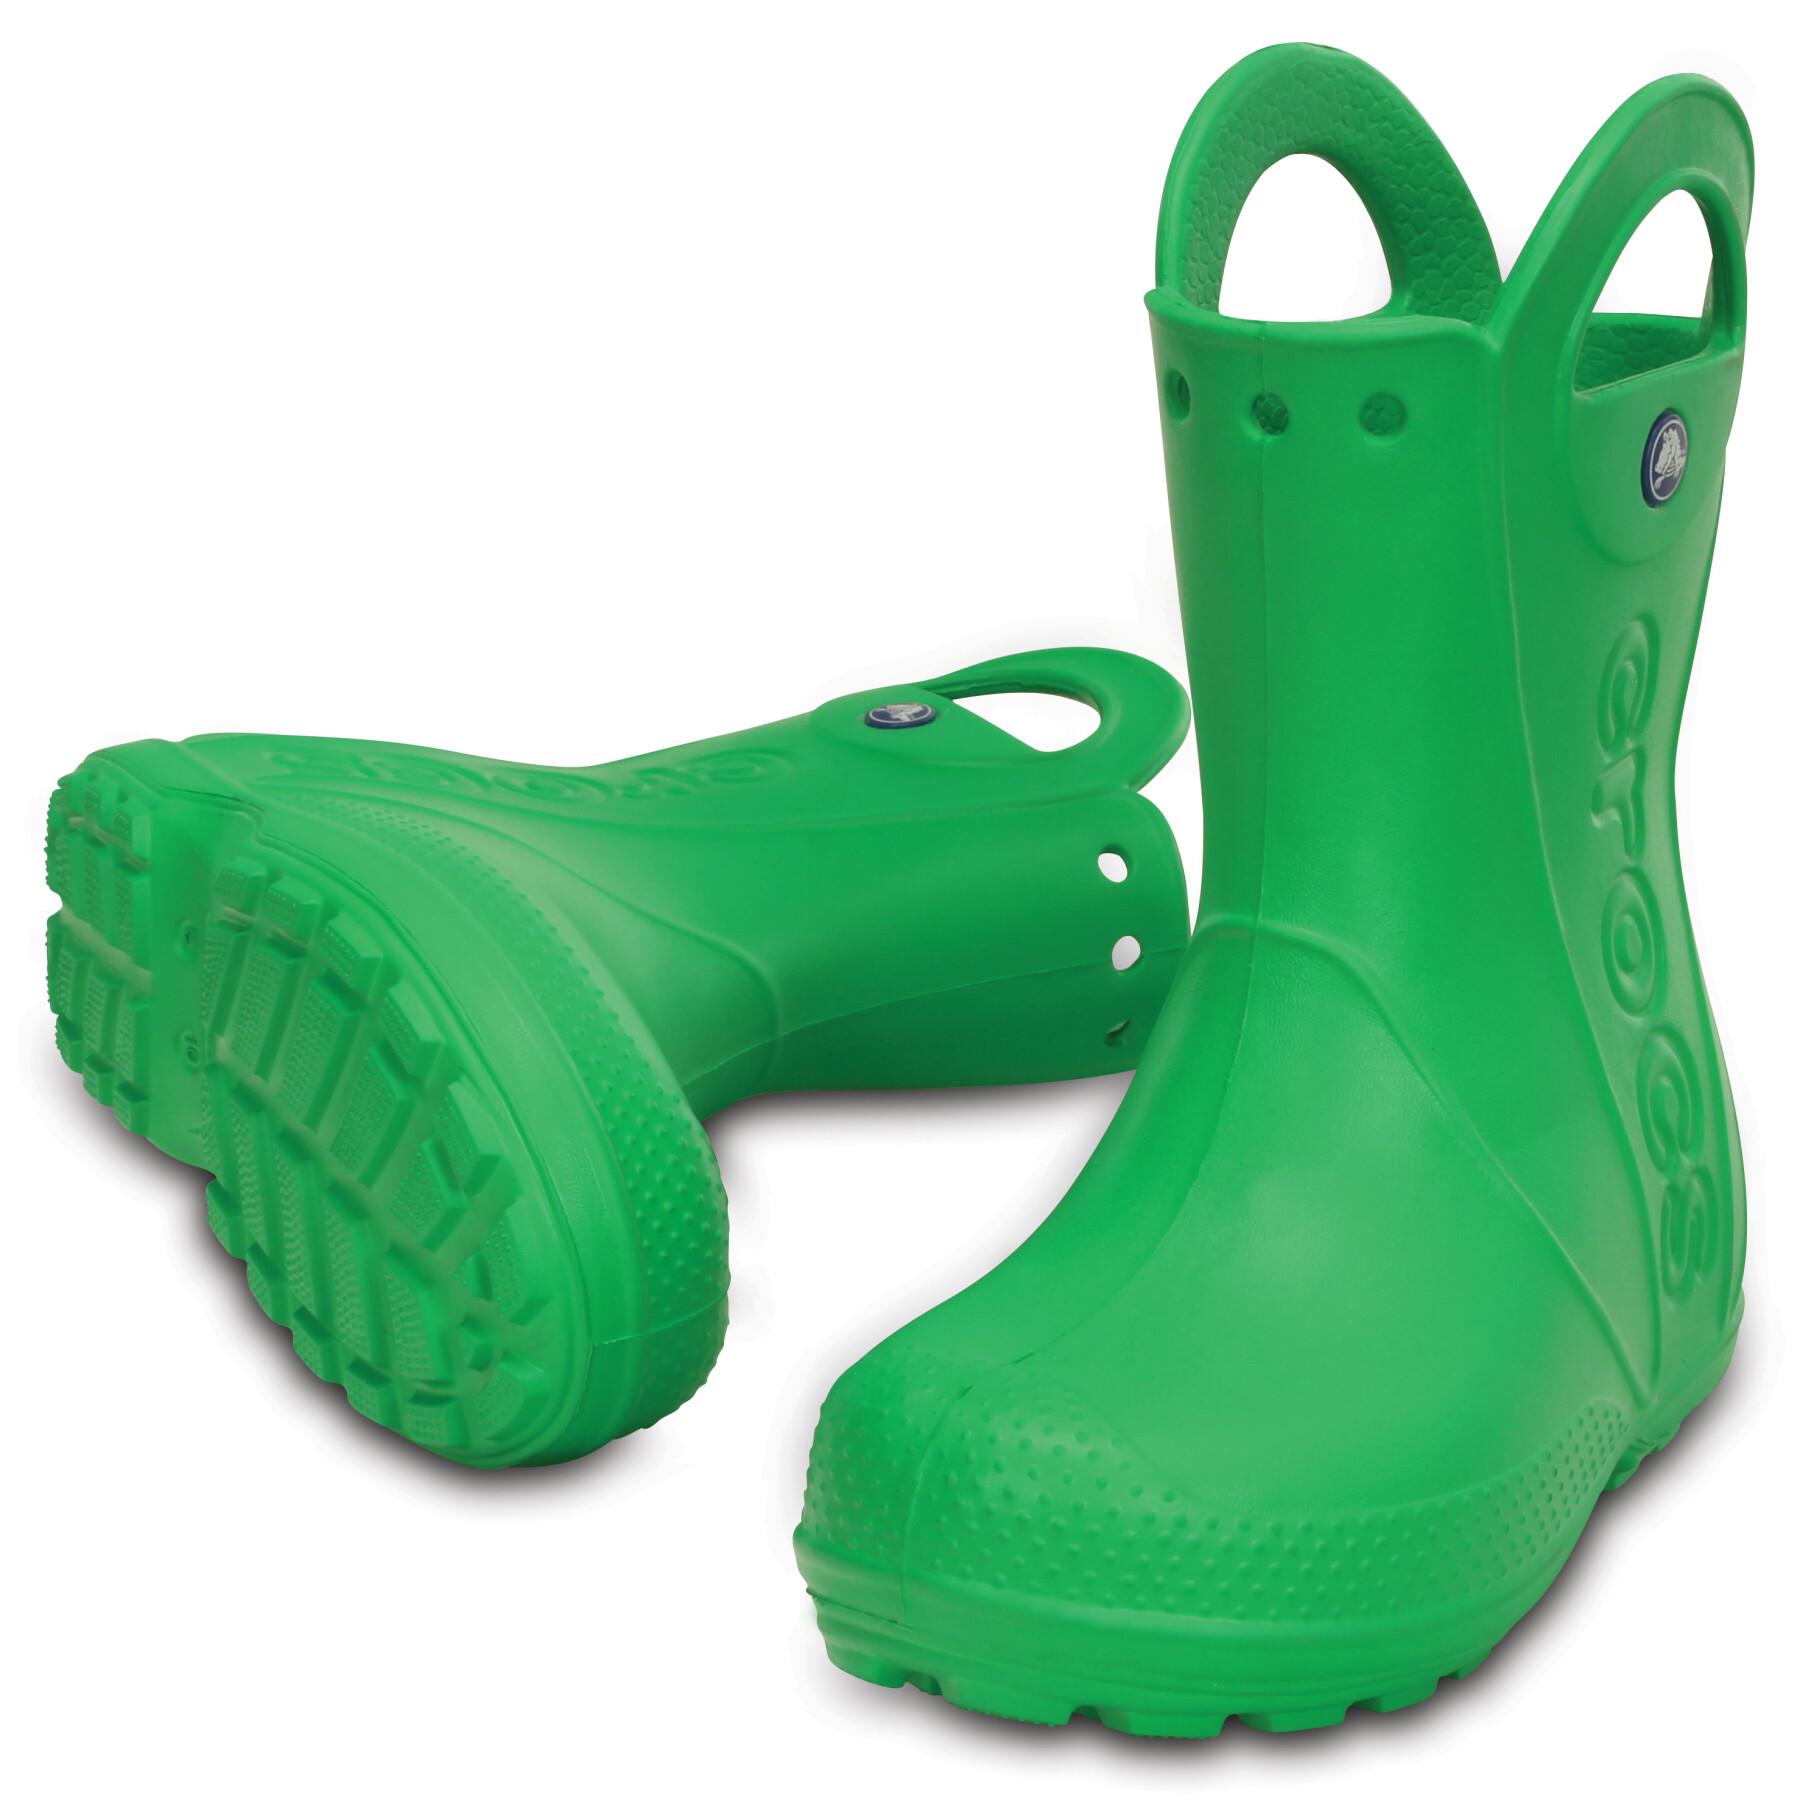 Botas de chuva para crianças Crocs handle it rain